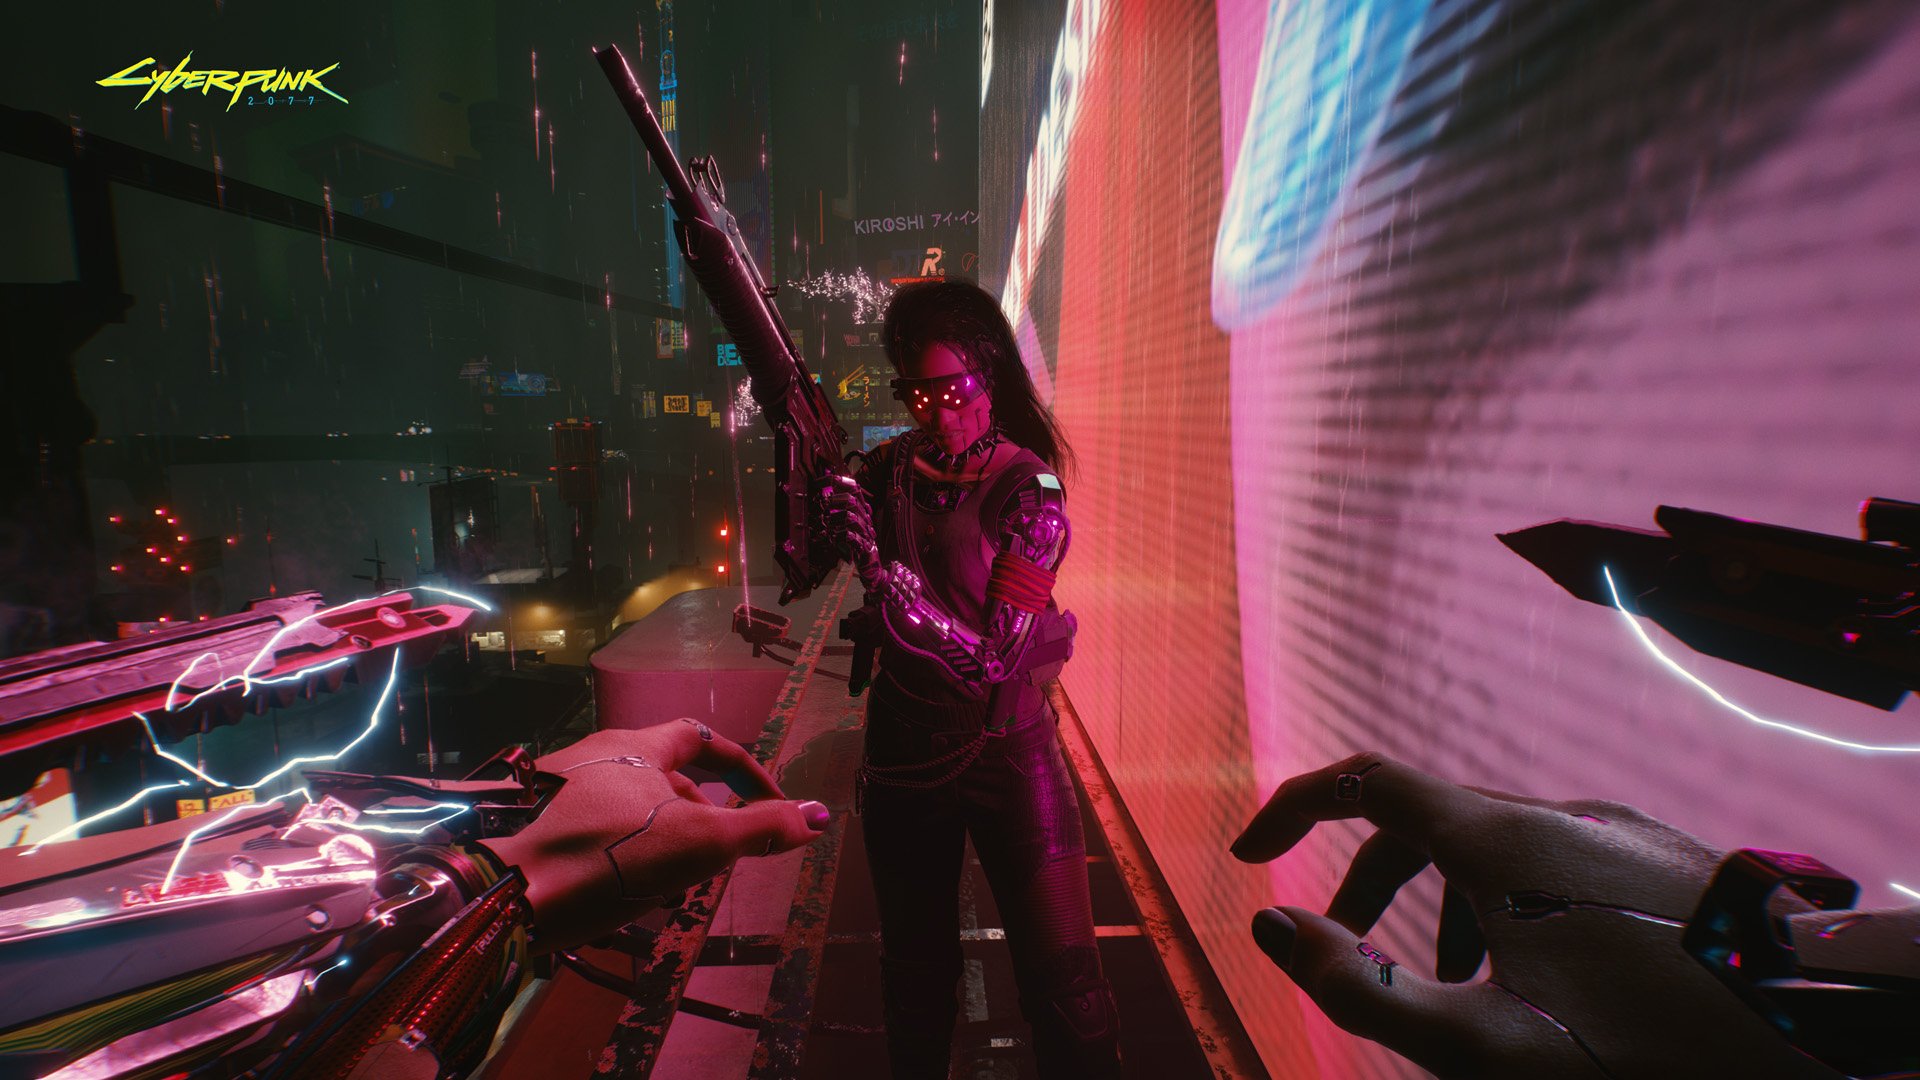 Llega el videojuego más esperado de la década: Cyberpunk 2077 ya es una realidad